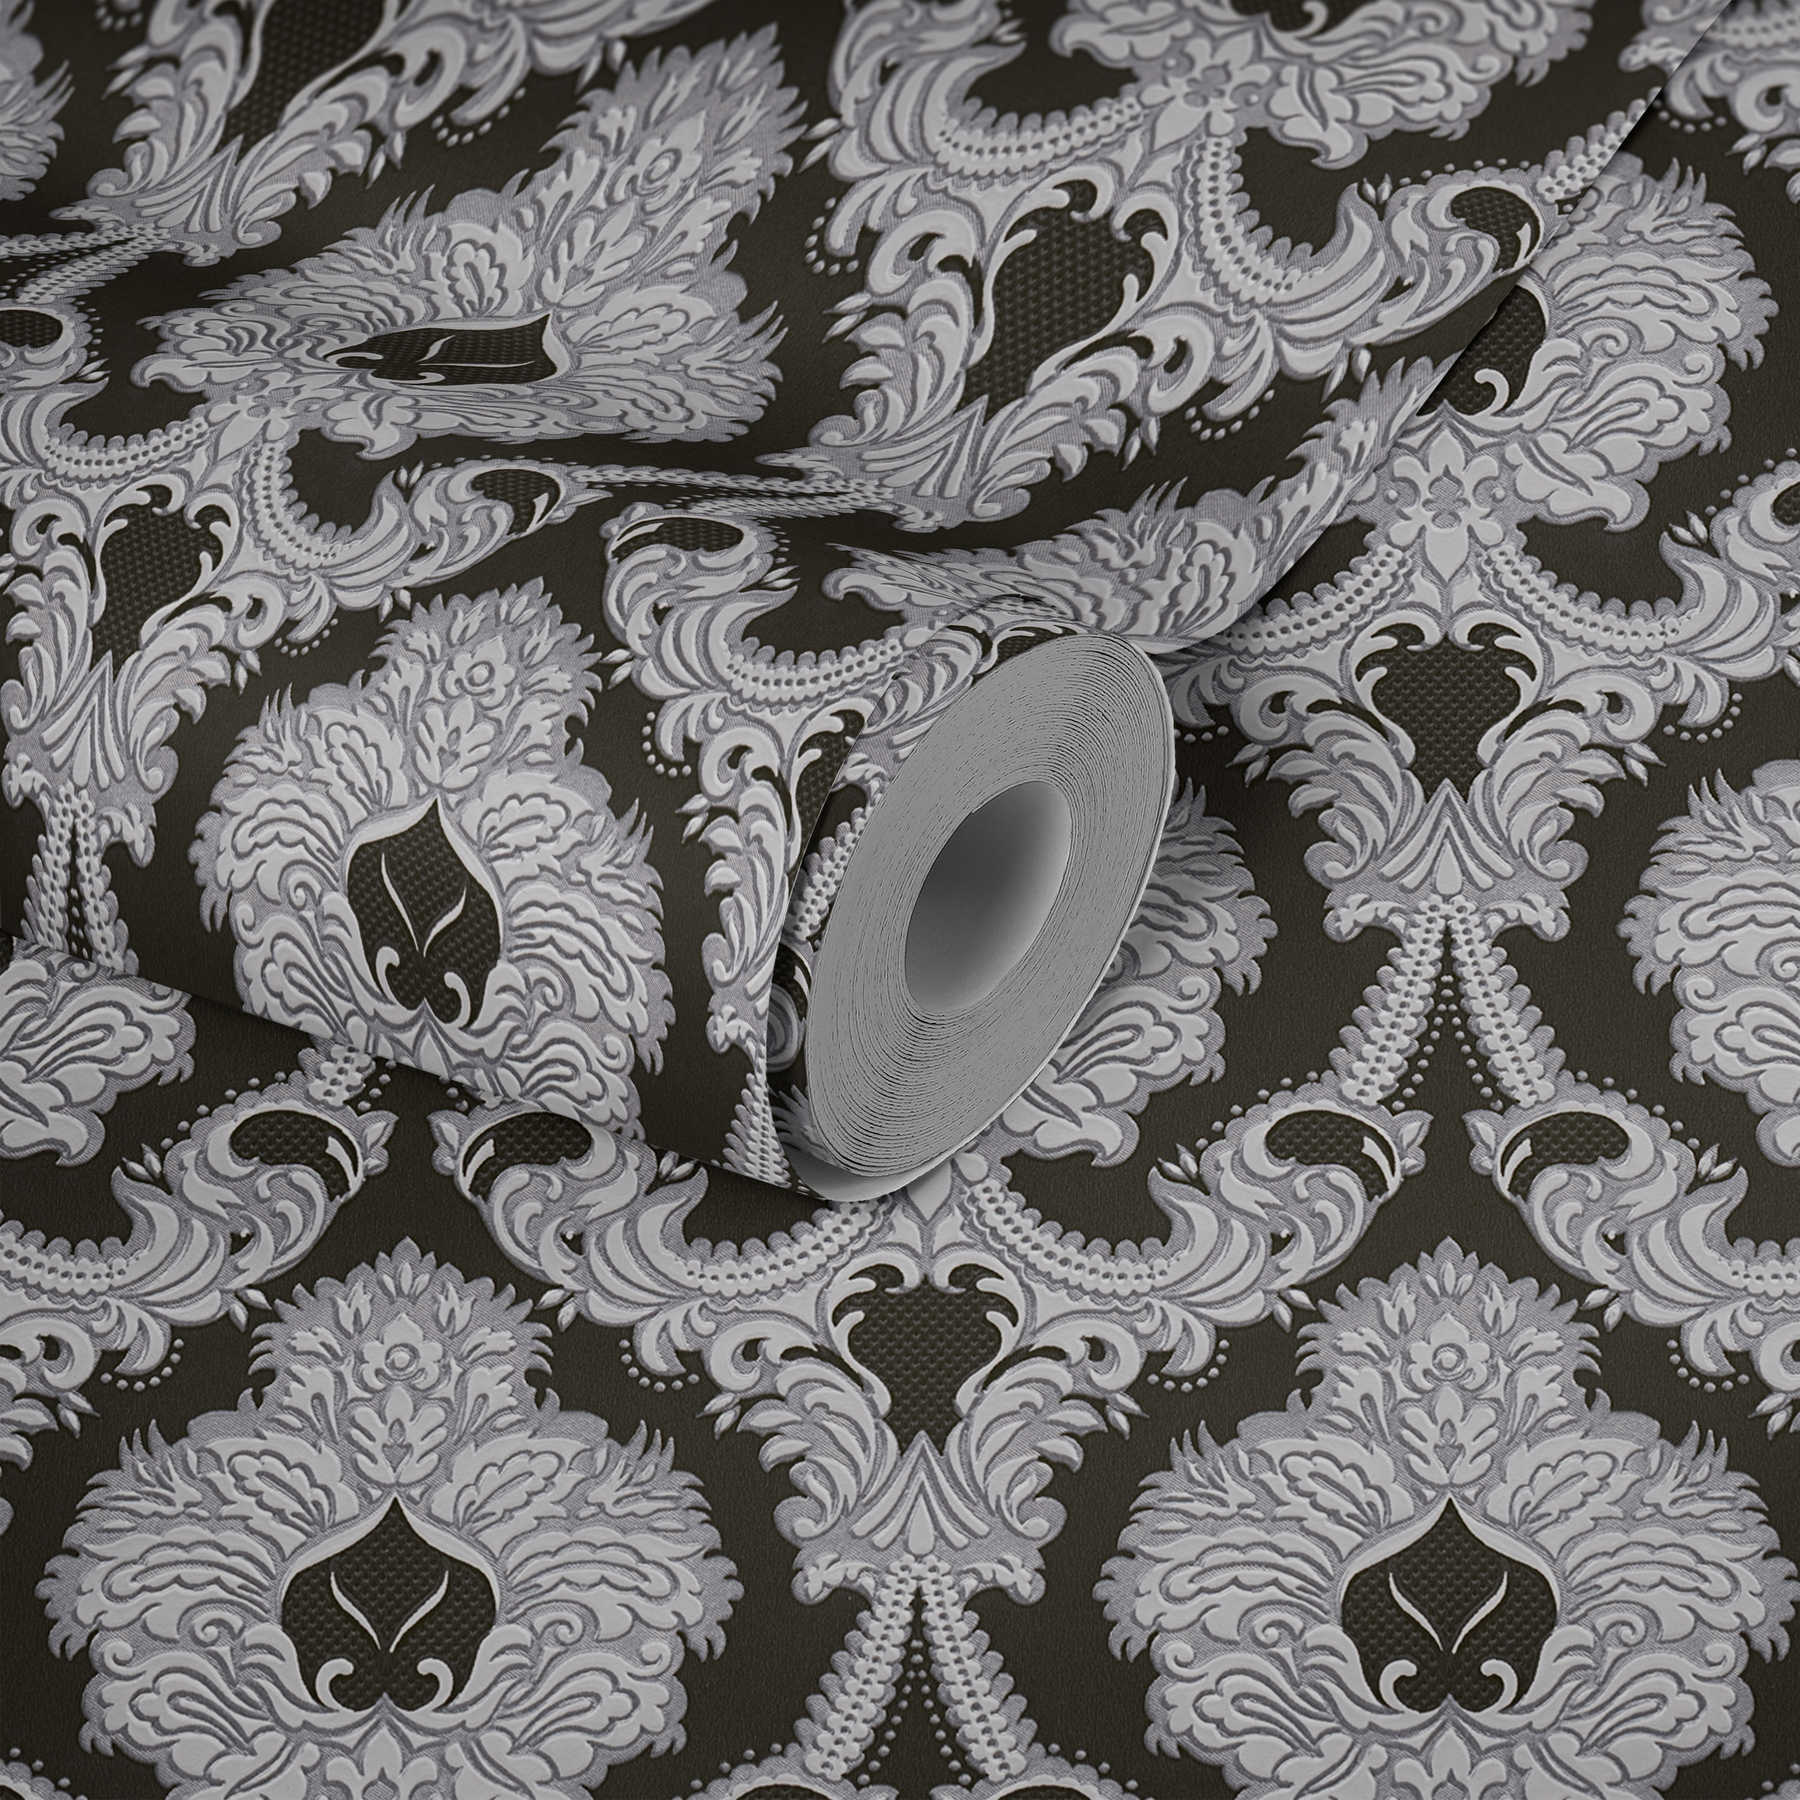             Opulent ornament behang, zilveren accenten - zilver, zwart, wit
        